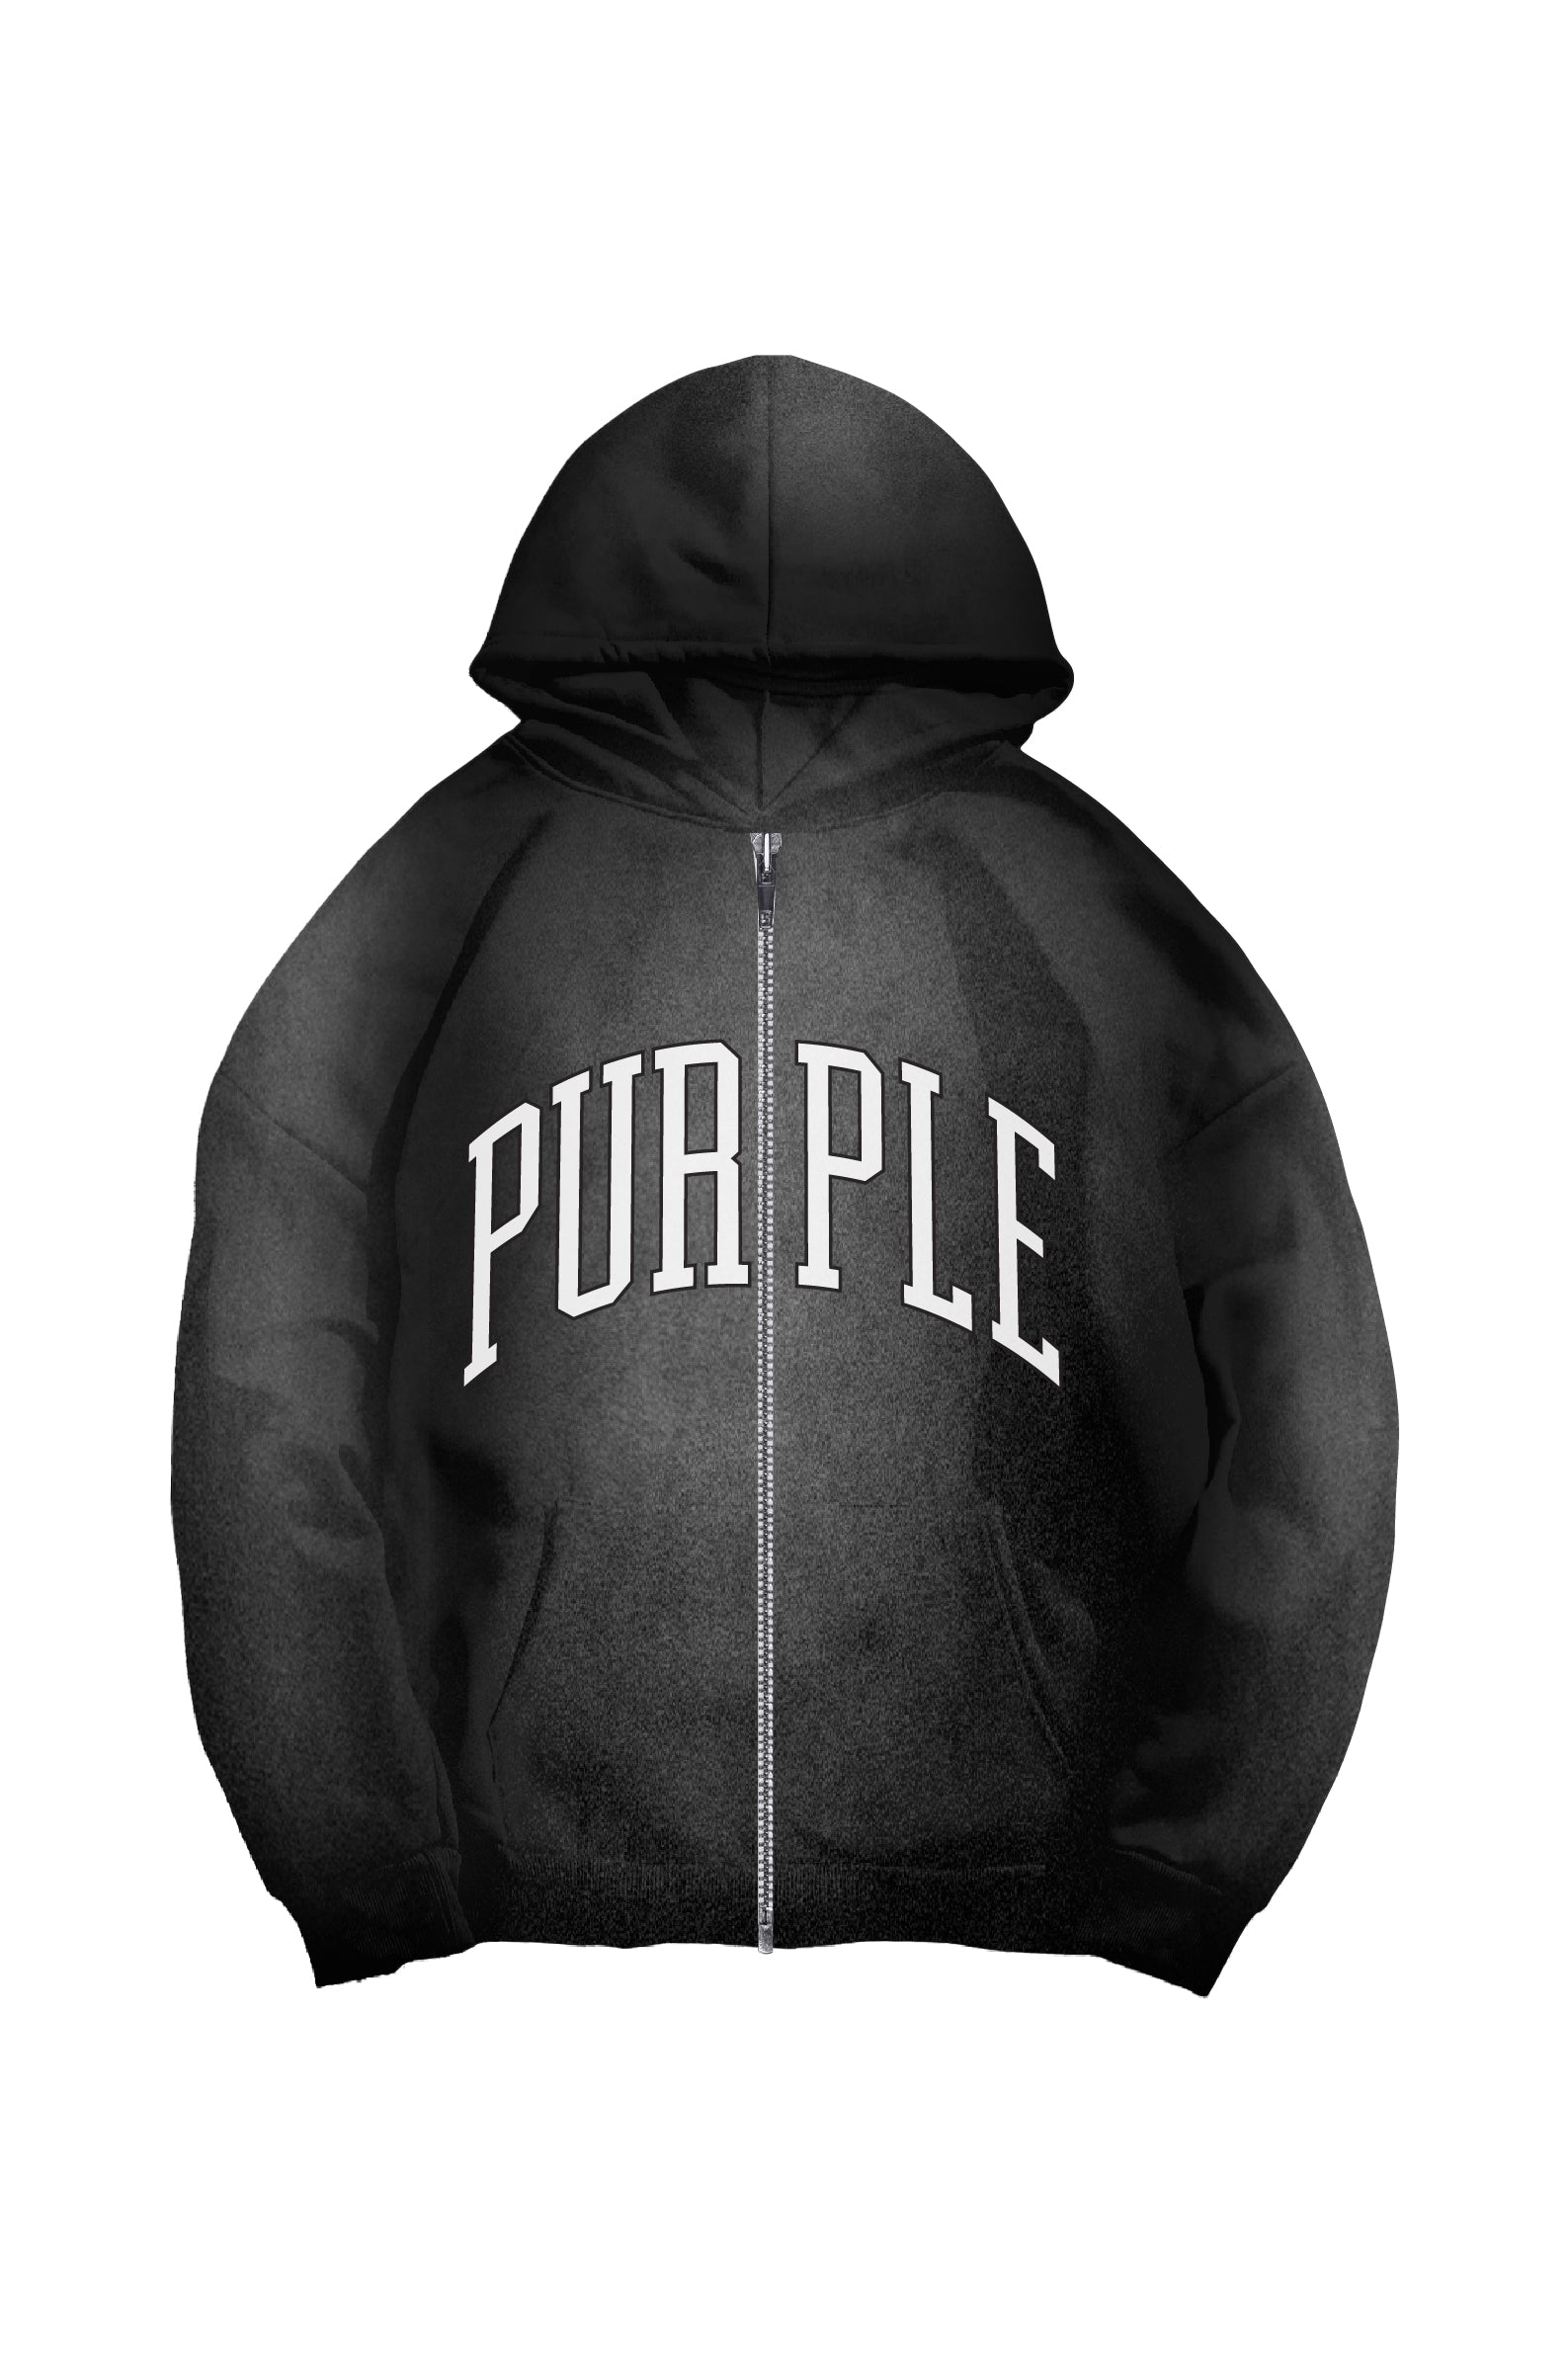 Purple Brand Collegiate Zip Up Hoodie